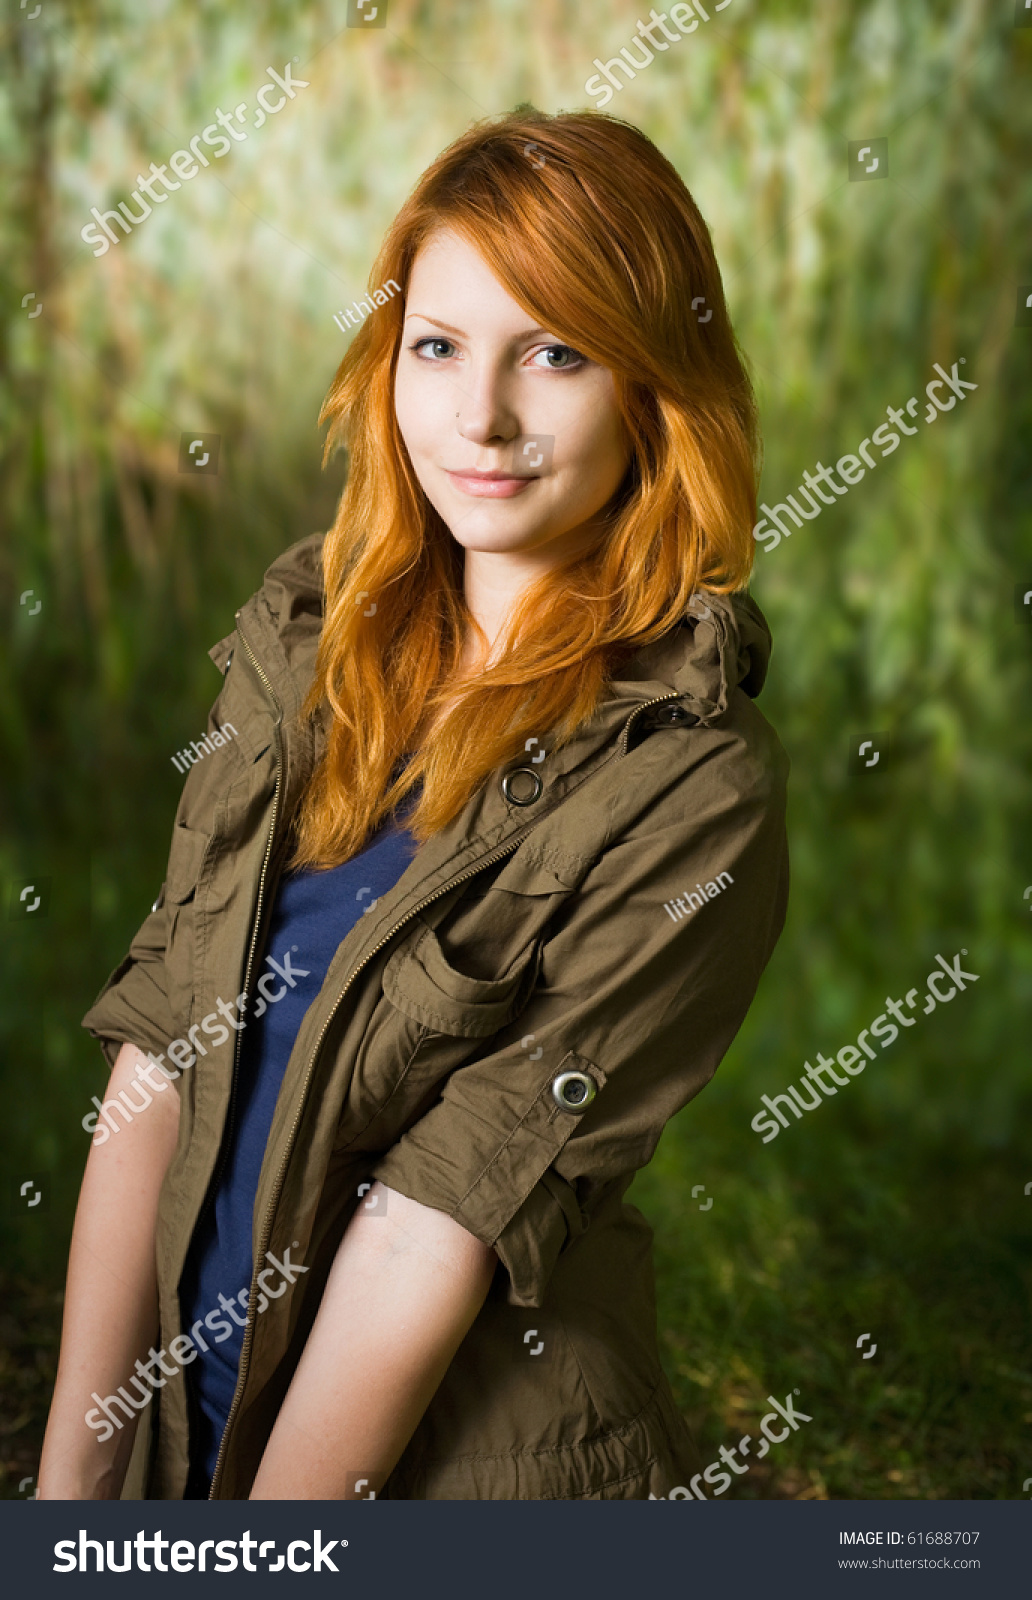 anil deolalkar share teen redhead pics photos